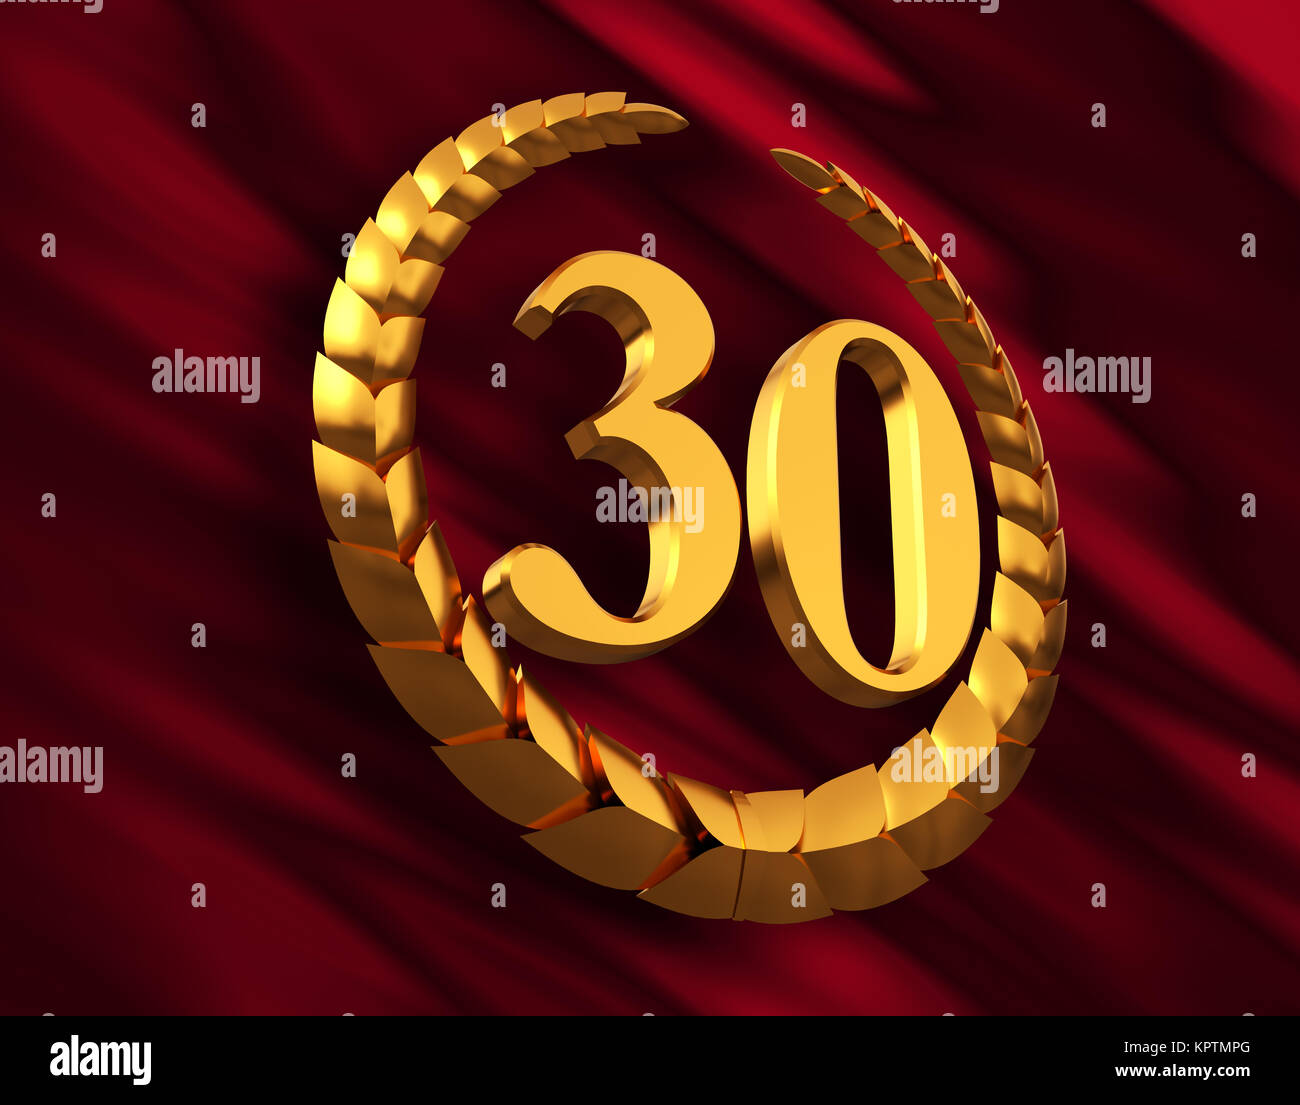 Aniversario corona de laurel de oro y el número 30 en la bandera roja Foto de stock